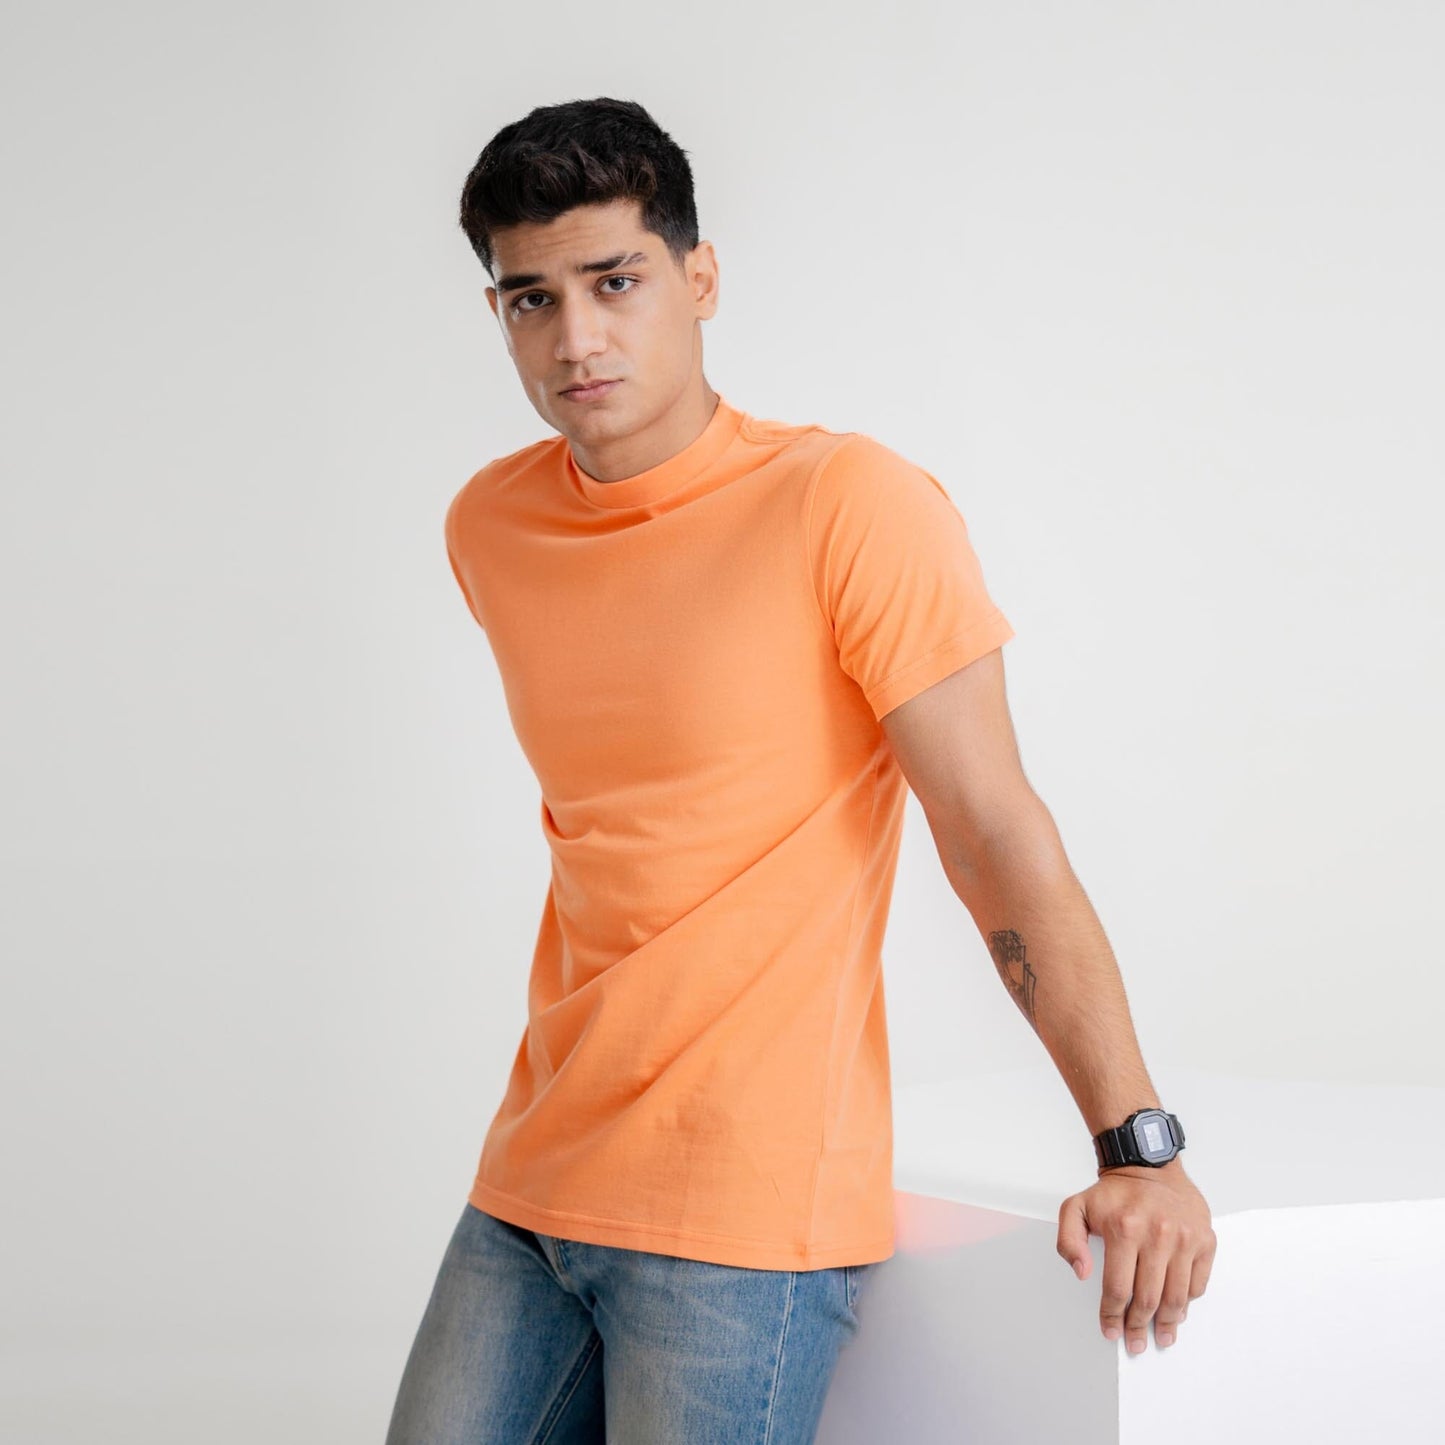 Loops Link Men's Classic Tee Shirt Men's Tee Shirt SZK Orange S 